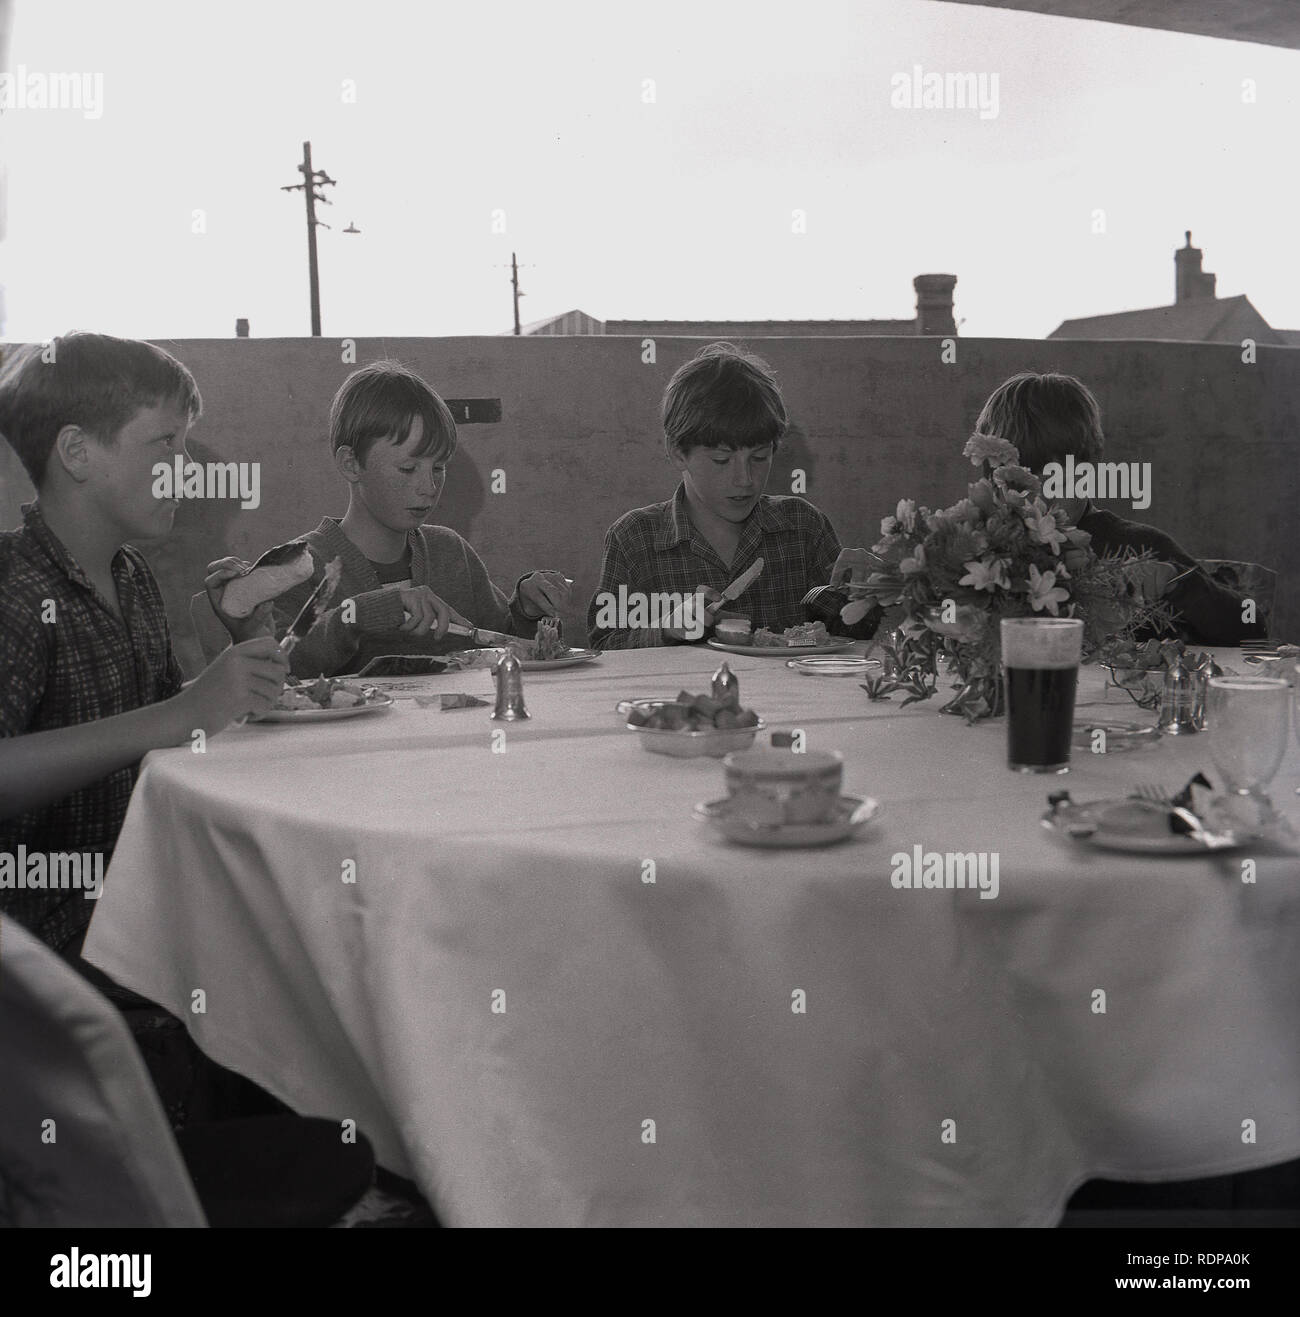 1967, historische, vier junge Jungen, die einen ausgefallenen Tee auf einem mit Stoff bedeckten Tisch an einem ungewöhnlichen Ort haben... die oberste Etage eines mehrstöckigen Parkplatzes, organisiert vom gemeinderat zur Feier seiner Eröffnung, England, Großbritannien. Stockfoto